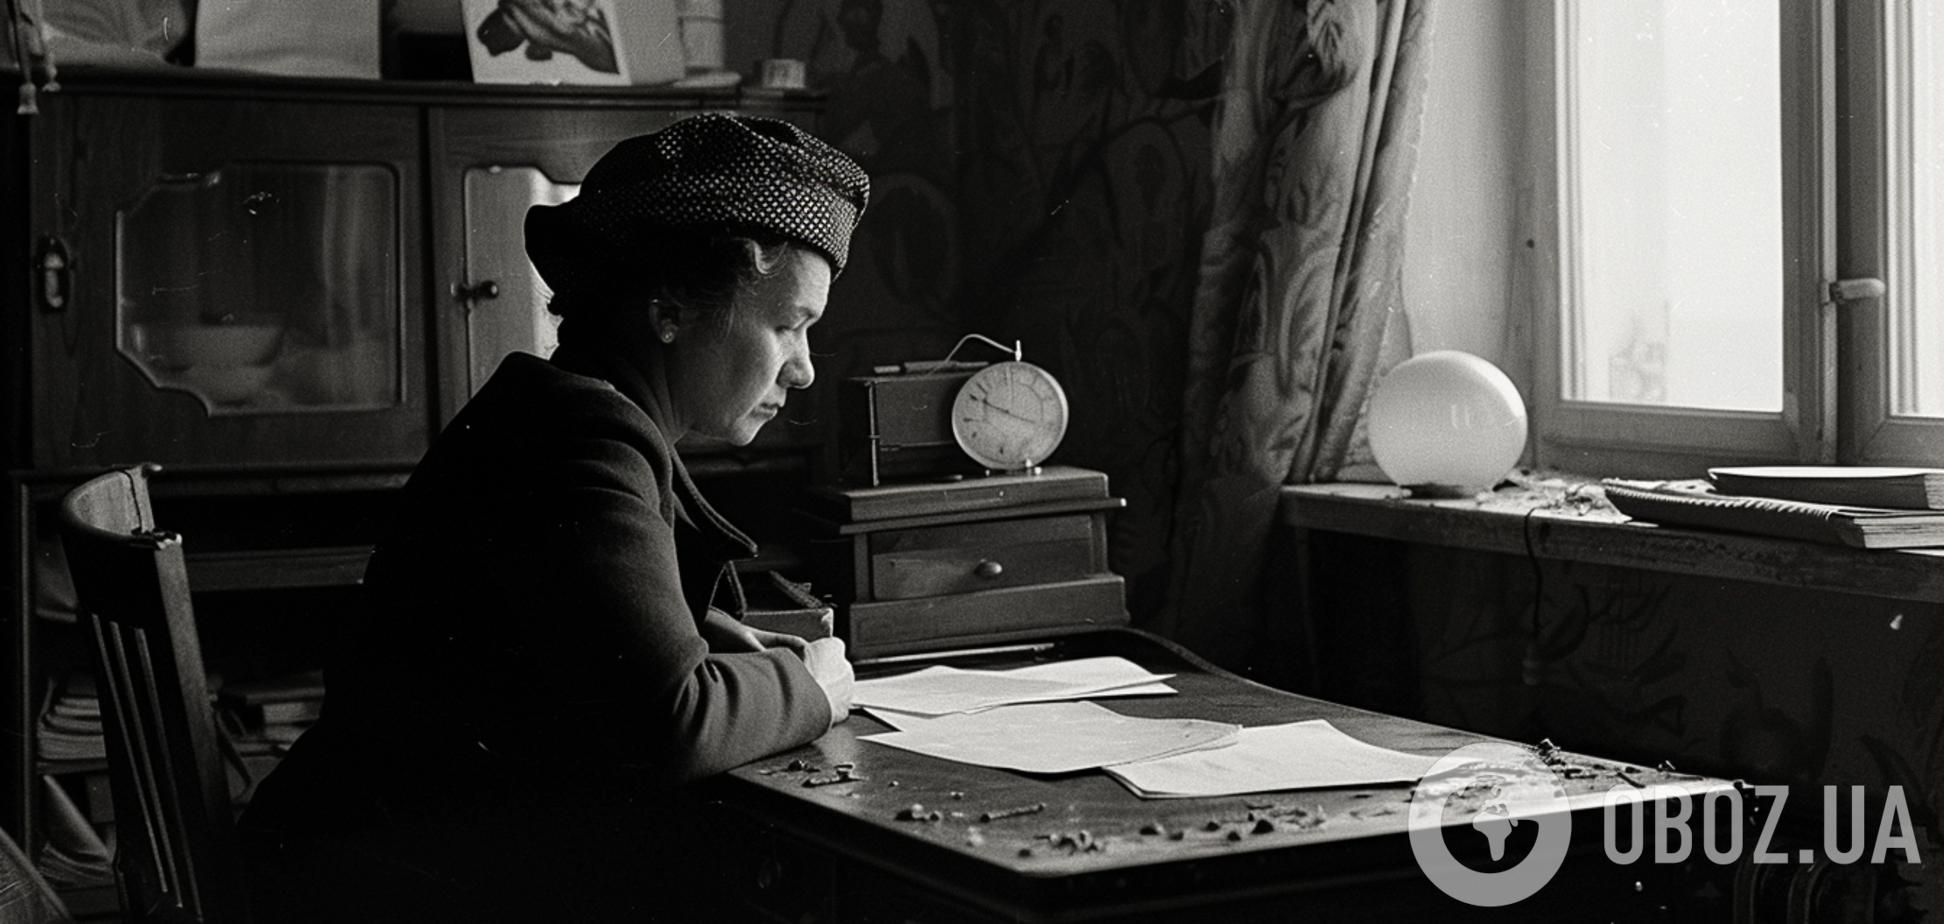 Почему в СССР женщины редко снимали шапку в помещении: интересное объяснение